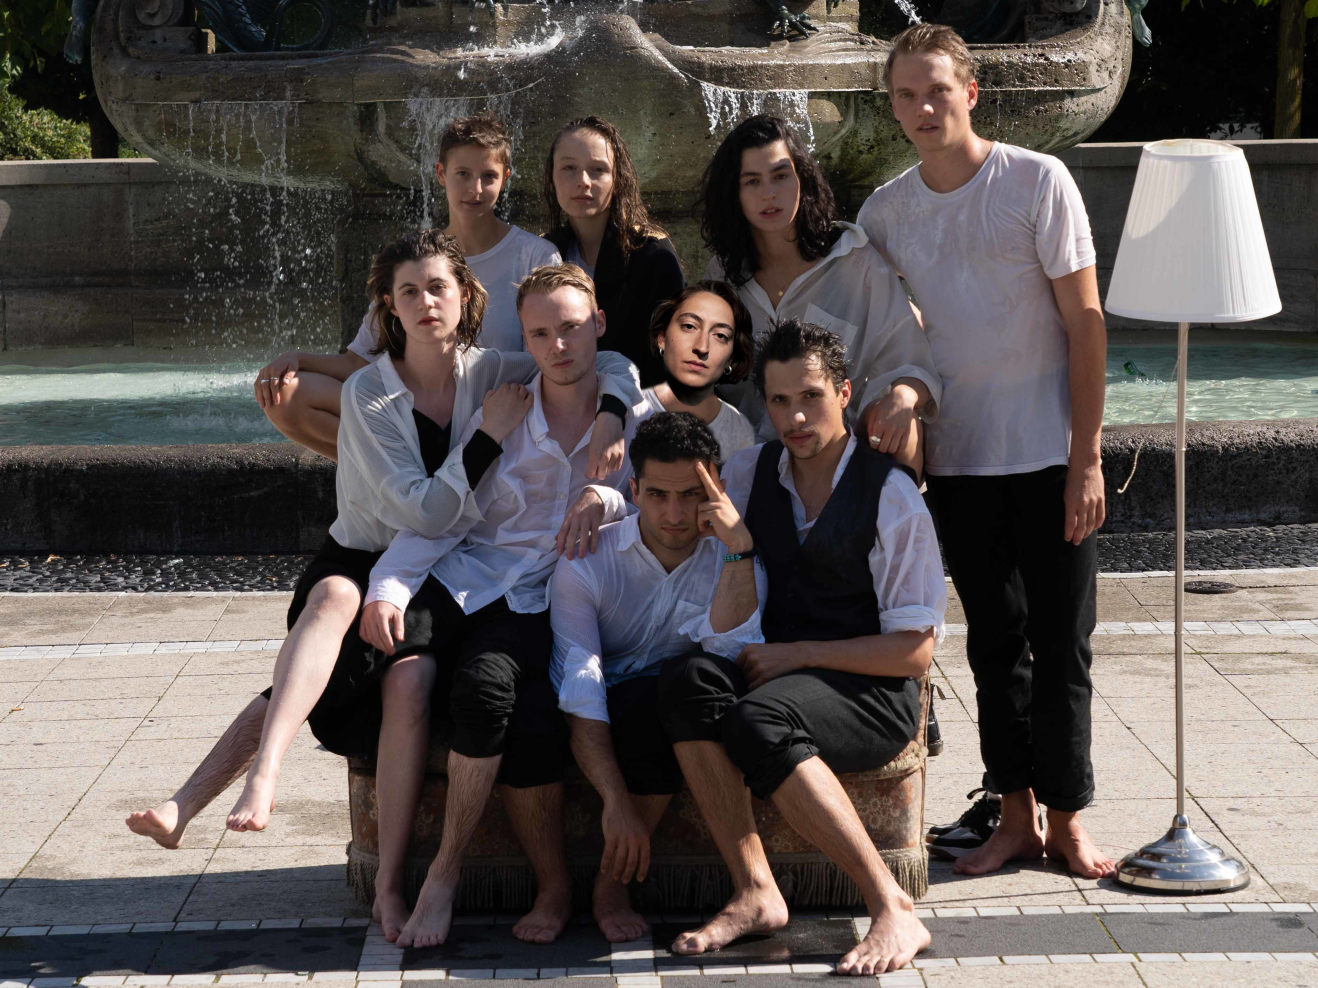 Gruppenfoto mit neun Absolvierenden vor einem Brunne, alle sind nass.